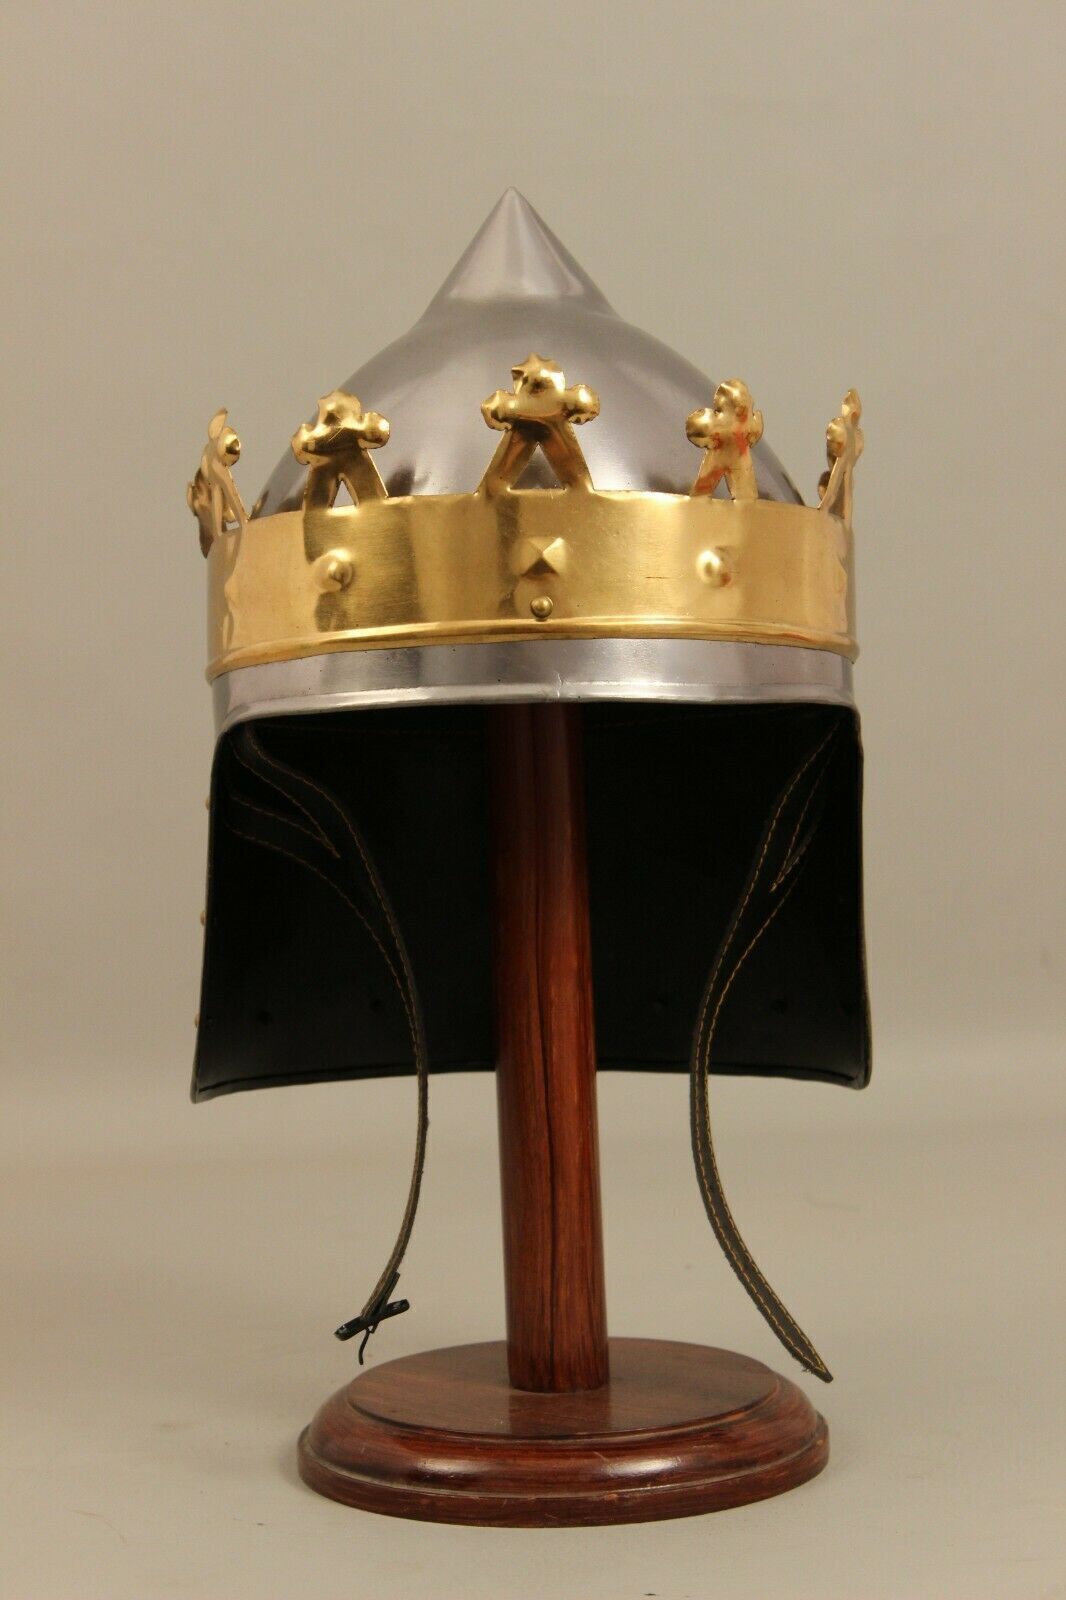 18 Guage Steel Medieval Knight Kings Rechard Helmet Brass Crown Helmet Cosplay